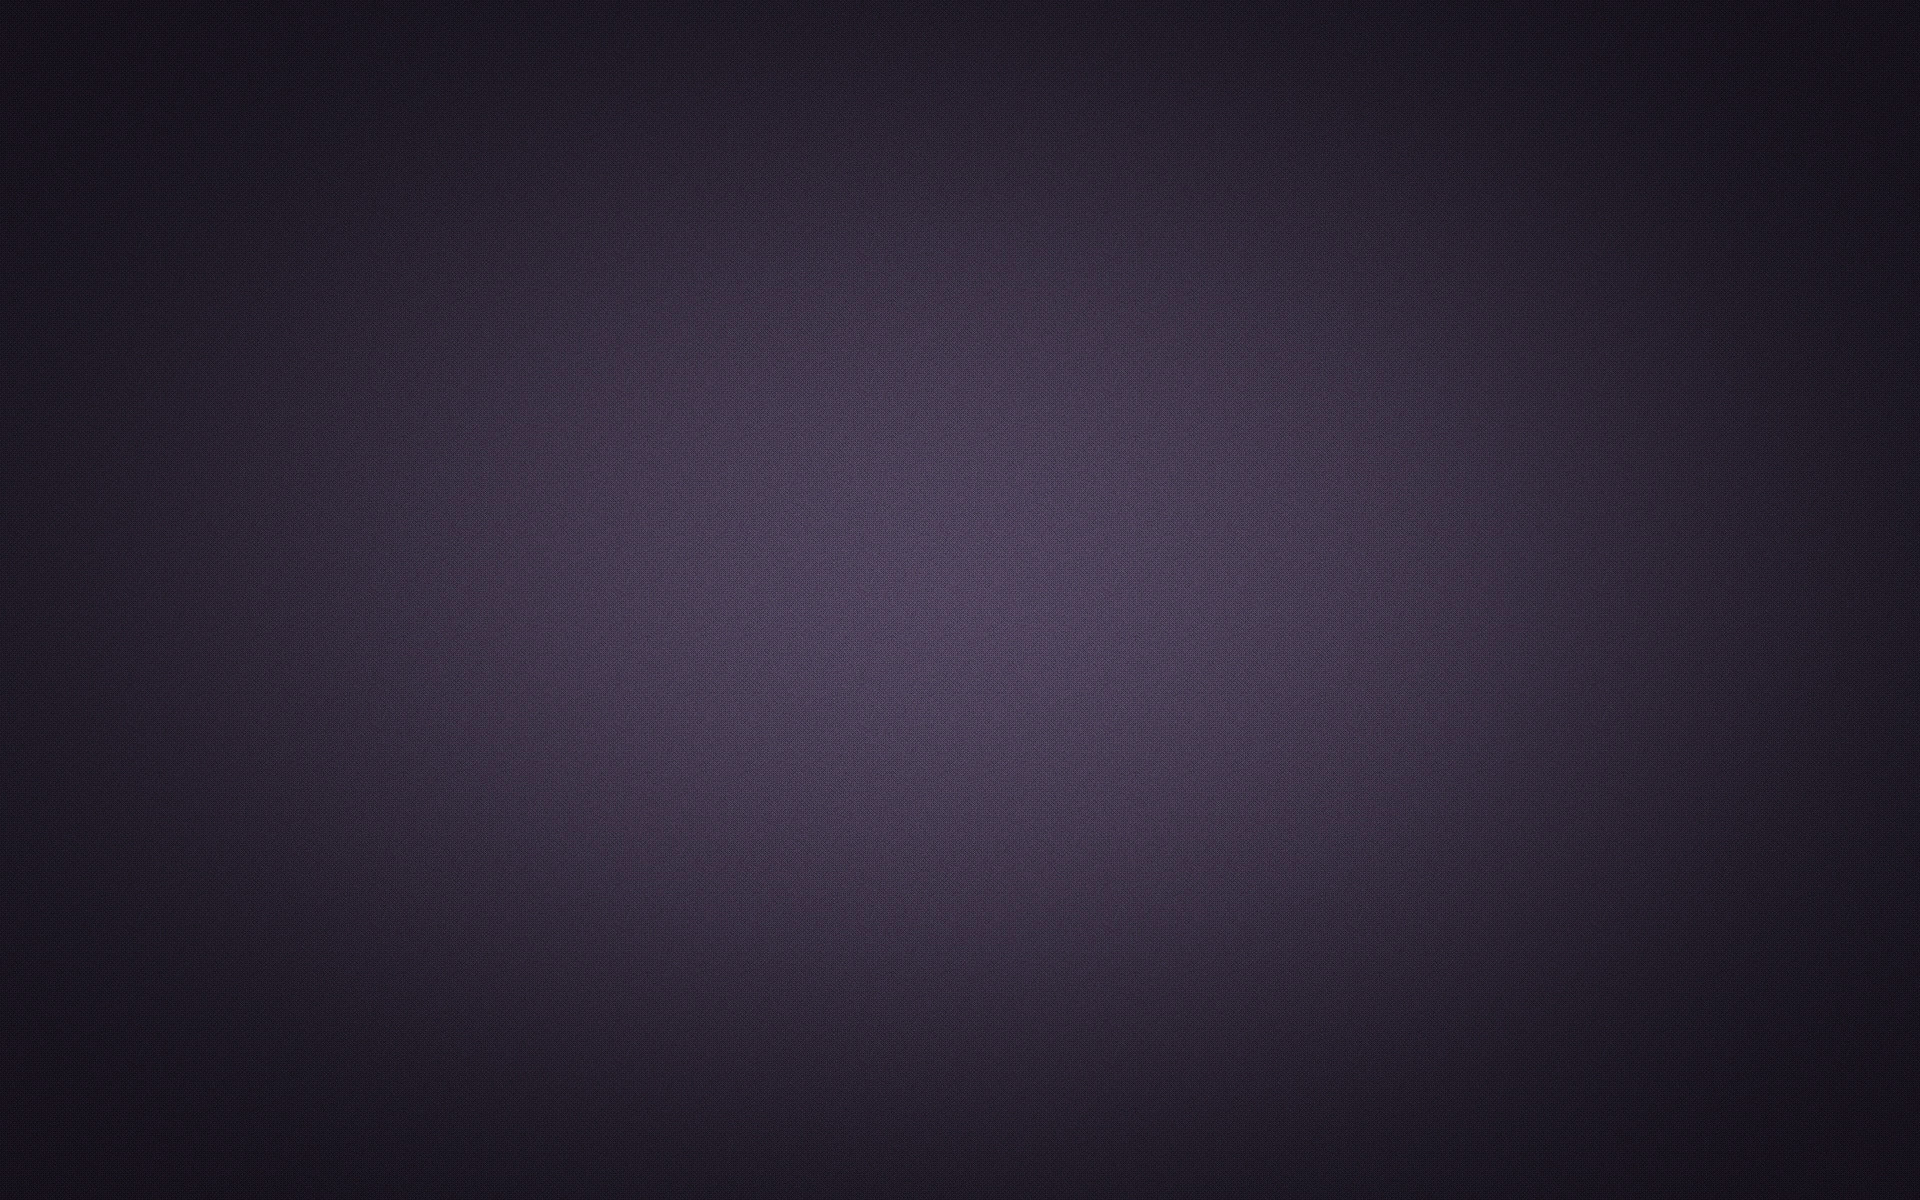 1920x1200 Purple and Grey Wallpaper - WallpaperSafari